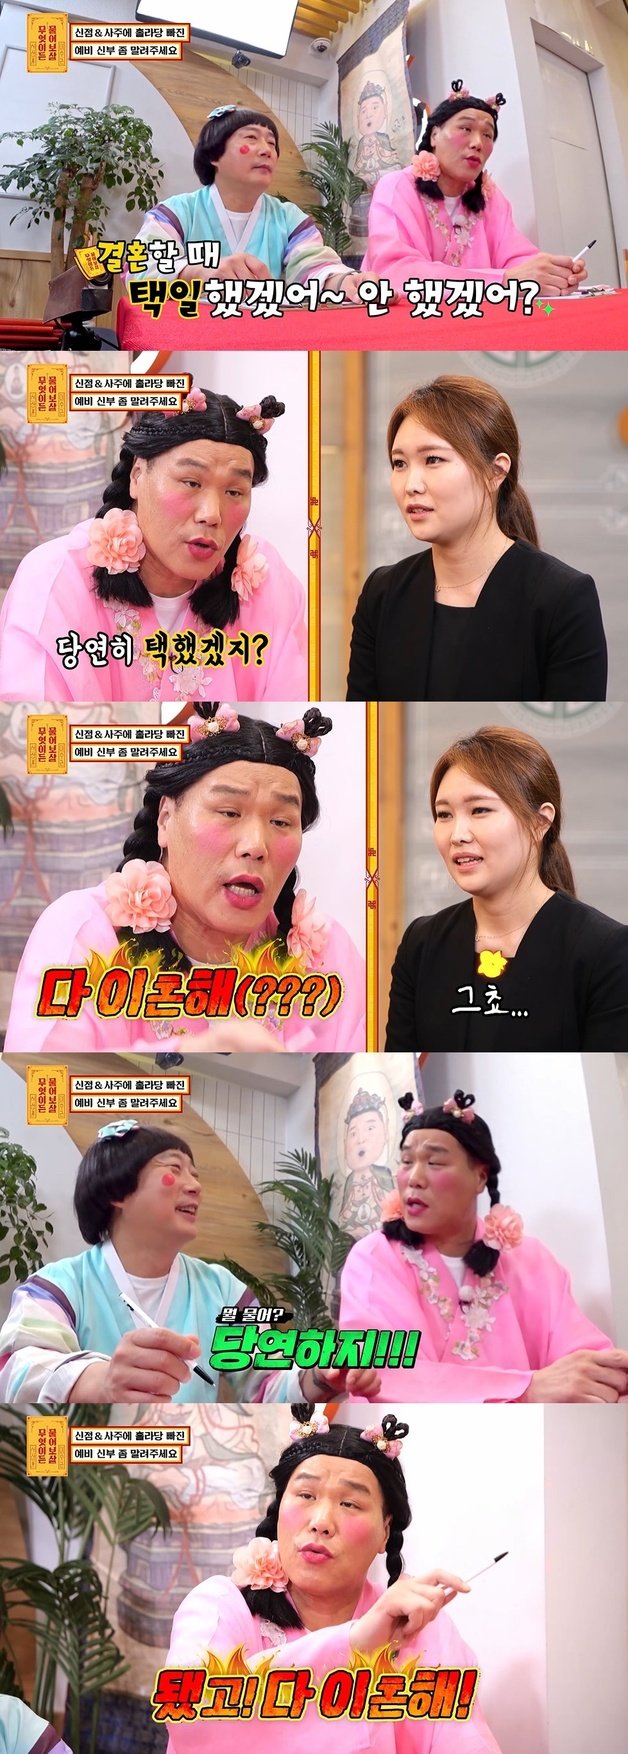 KBS Joy ‘무엇이든 물어보살’ 방송 화면 캡처